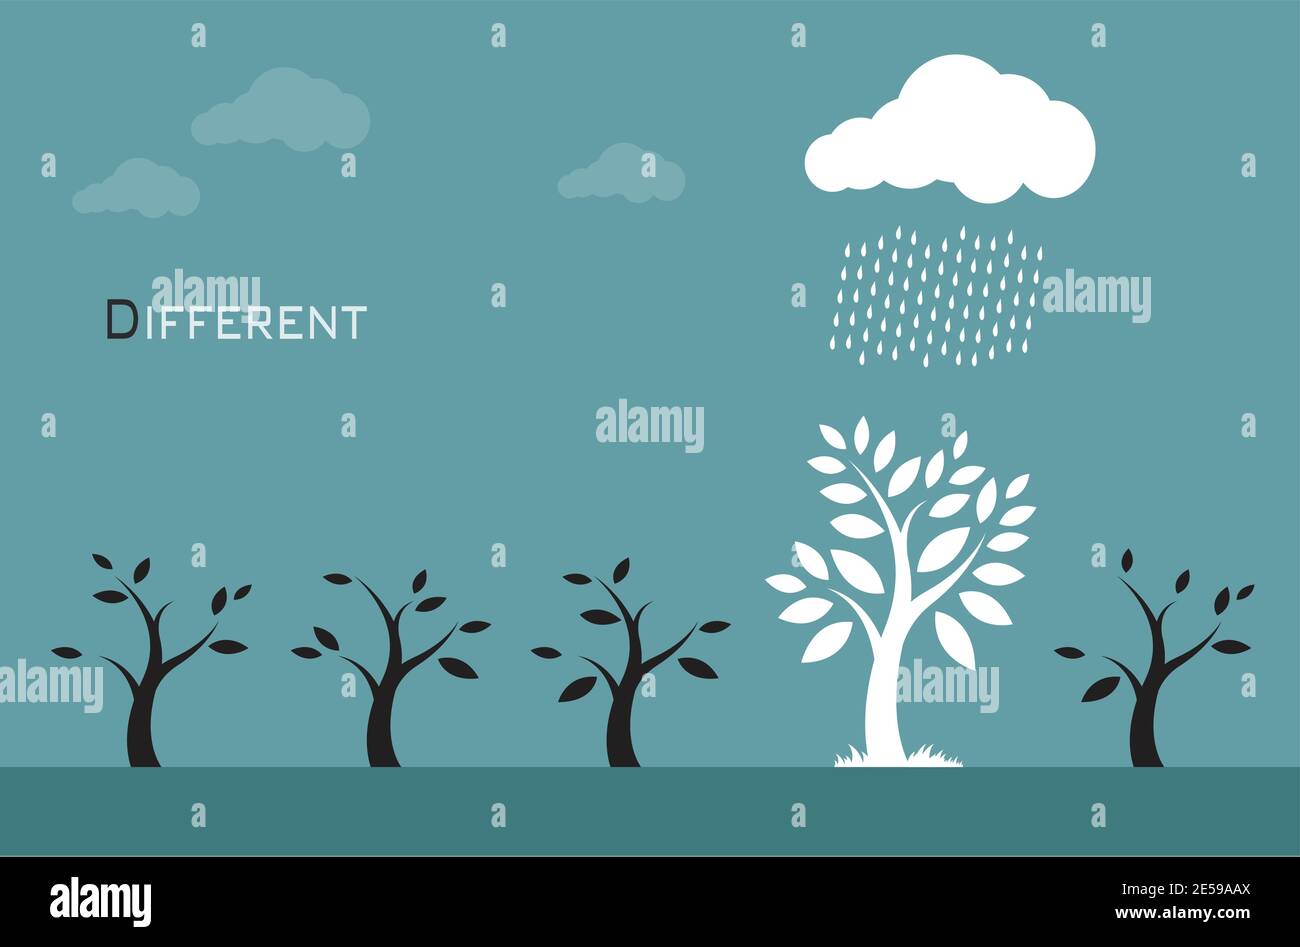 Vektorbilder von Bäumen, Wolken und Regen. Unterschiedliche Konzepte Stock Vektor